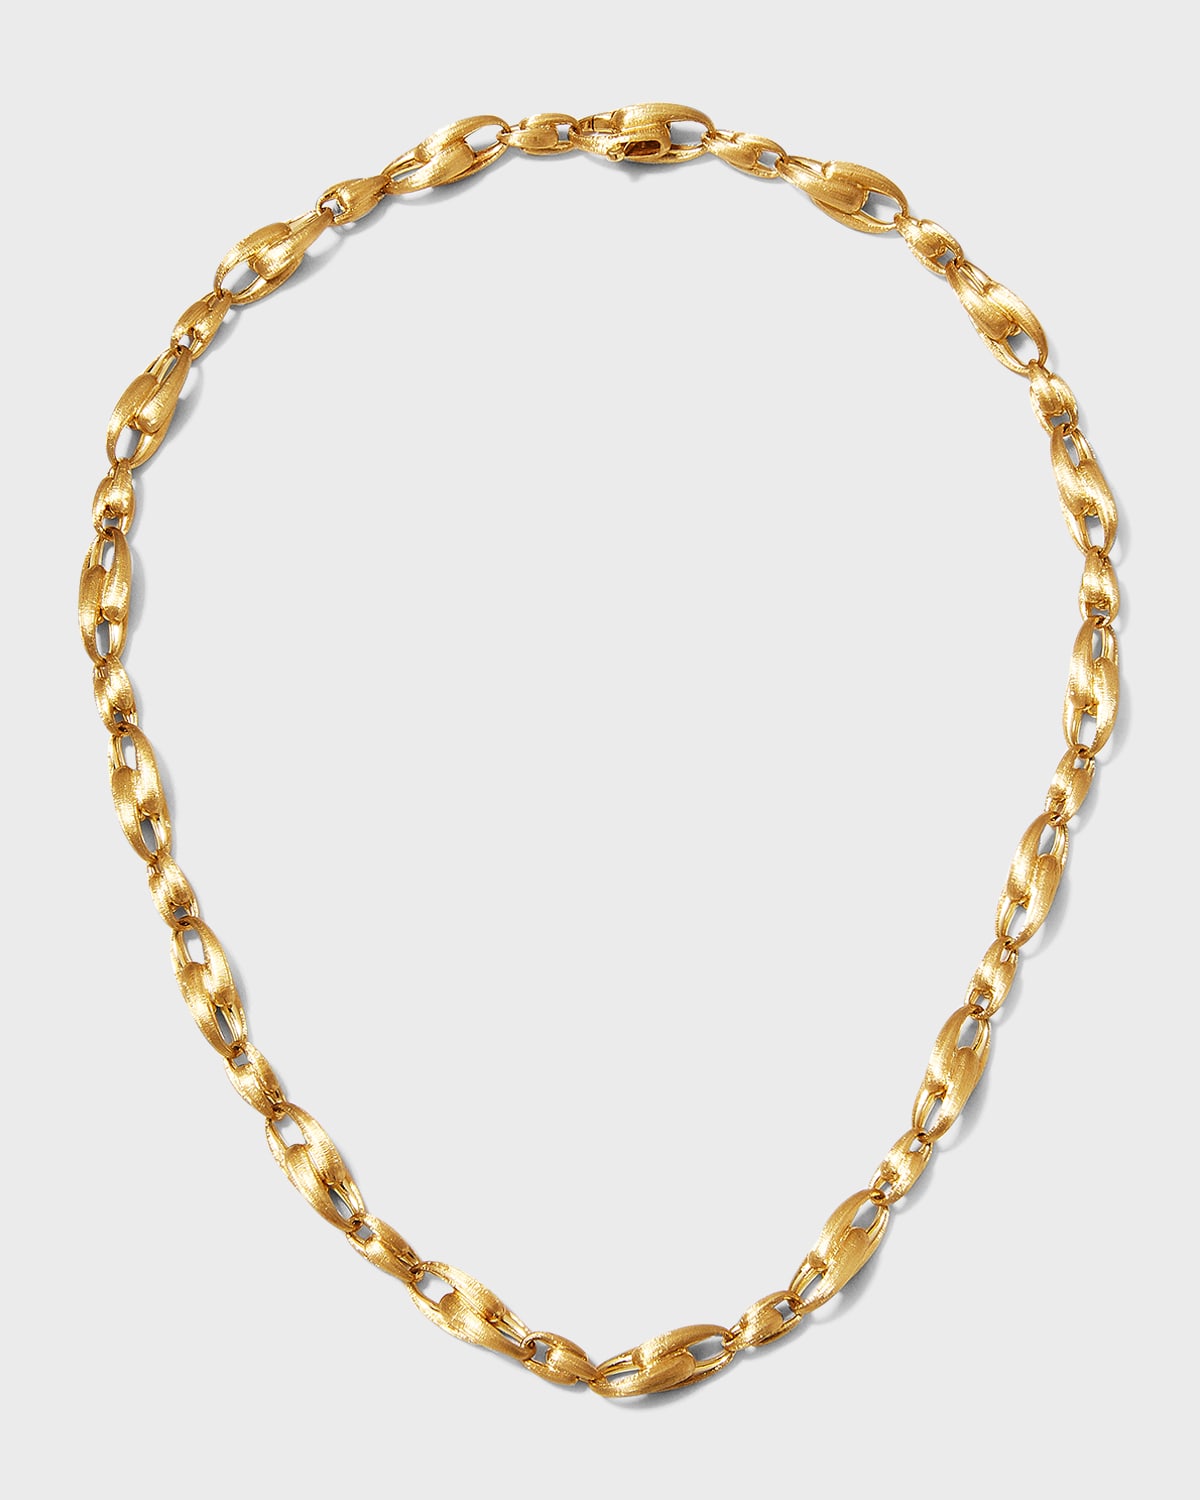 Lucia 18k Gold Interlock Chain Necklace, 17"L